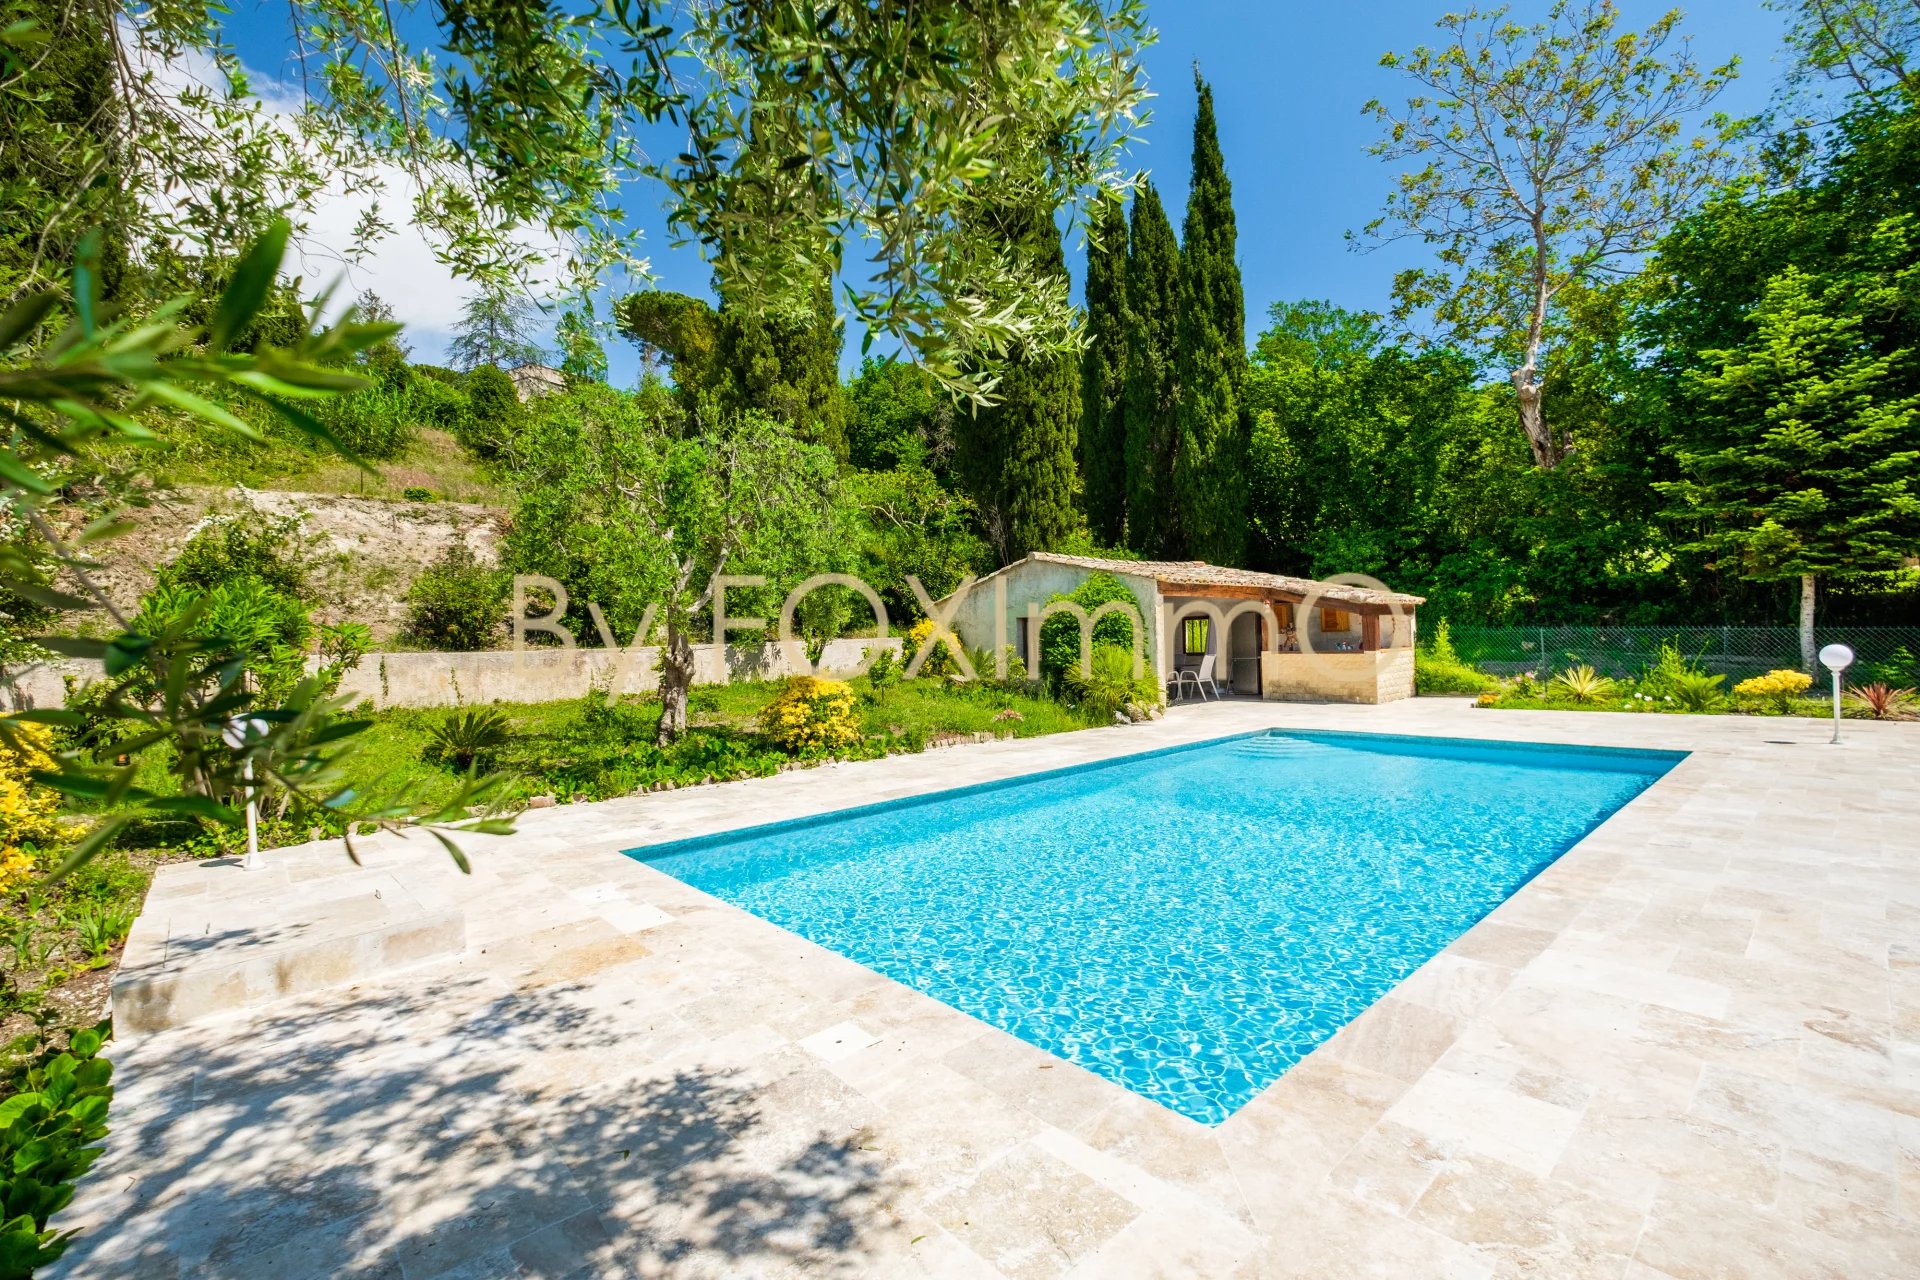 Sur la Côte d'Azur, magnifique villa au calme absolu avec piscine, pool house, garage et un terrain de 2680m²